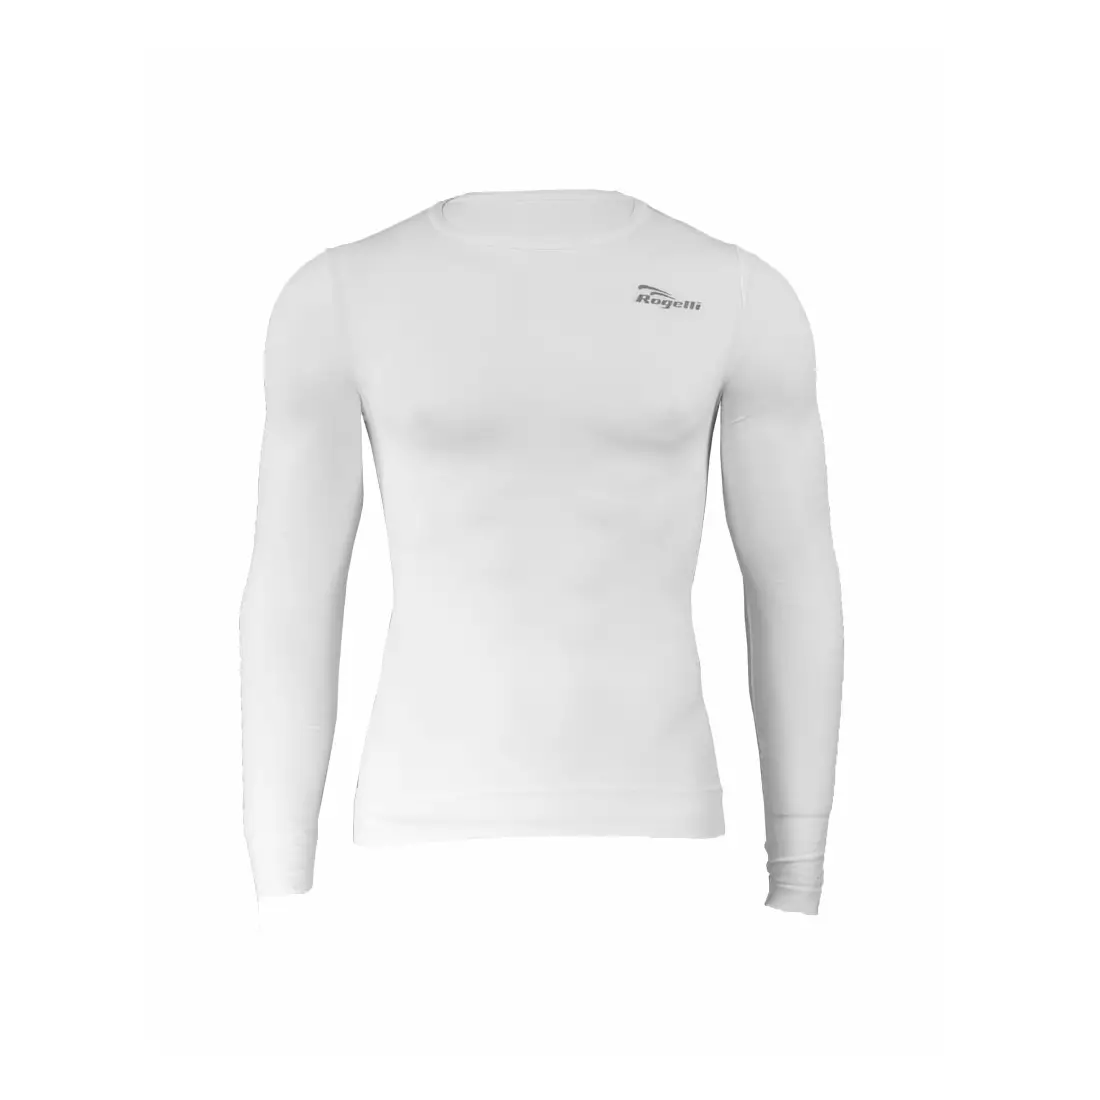 ROGELLI CHASE - 070.005 - Thermounterwäsche - Herren-Langarm-T-Shirt - Farbe: Weiß